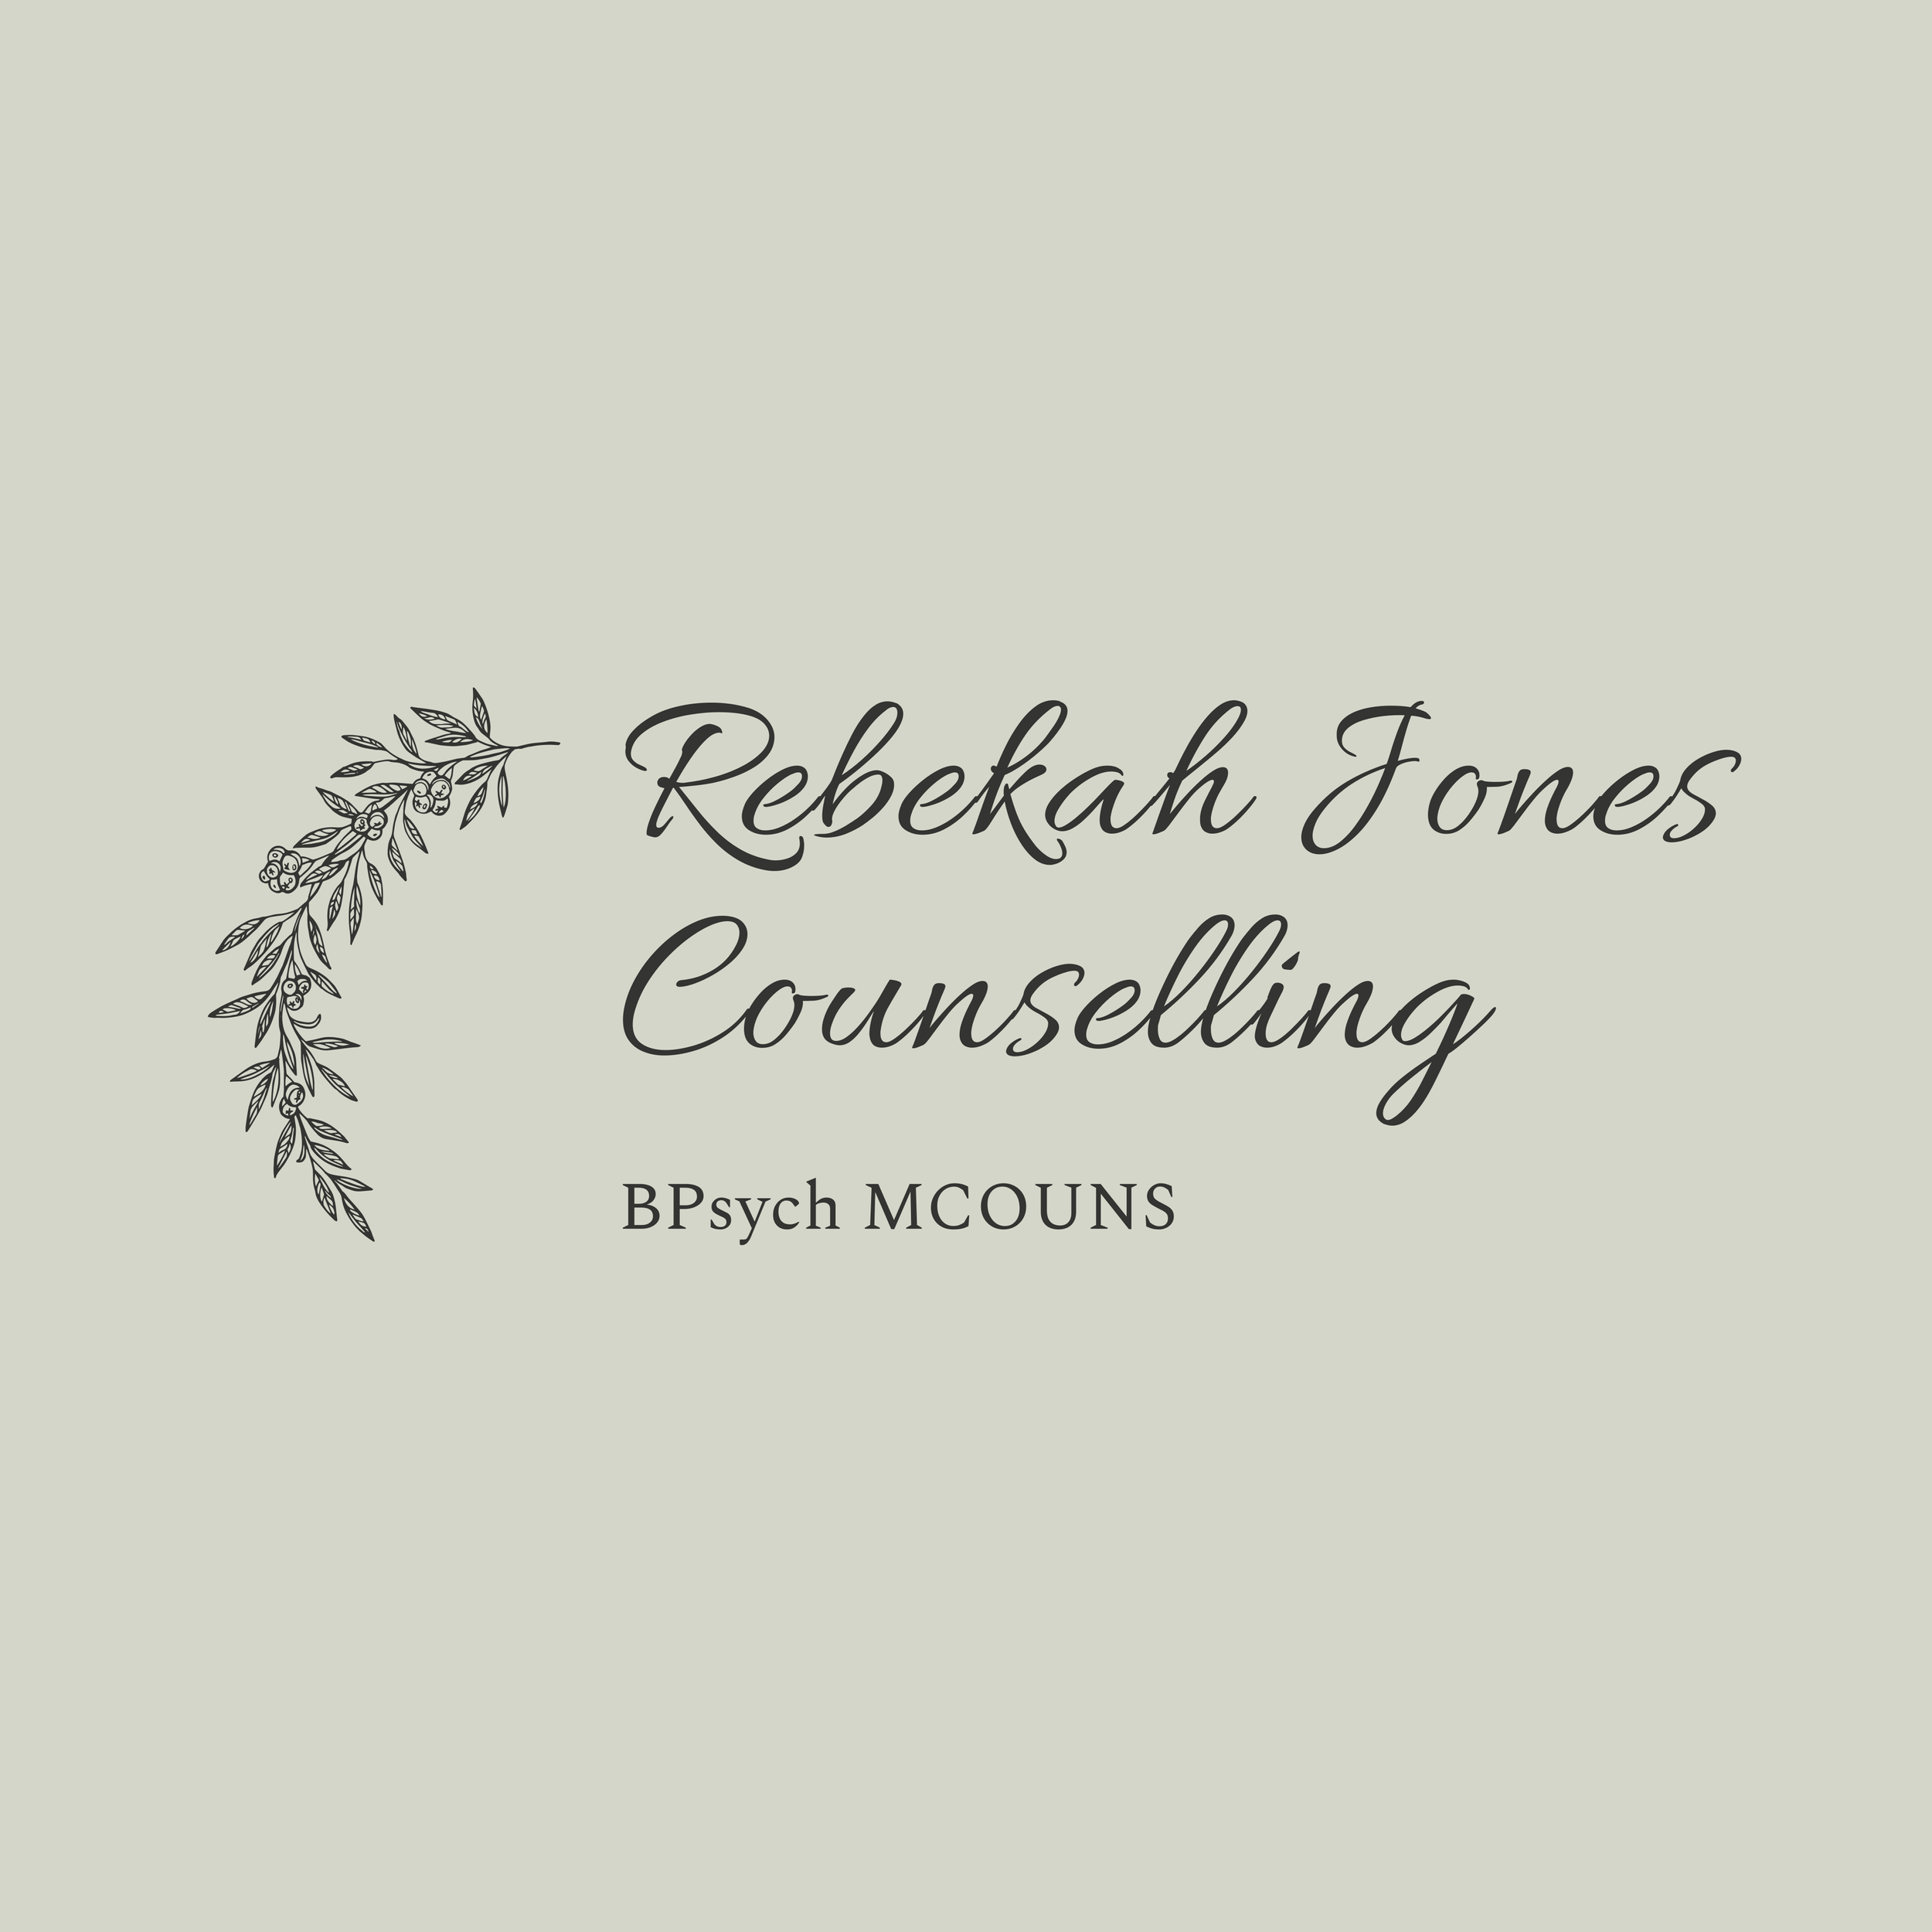 Rebekah Jones, Counsellor BPsych MCOUNS